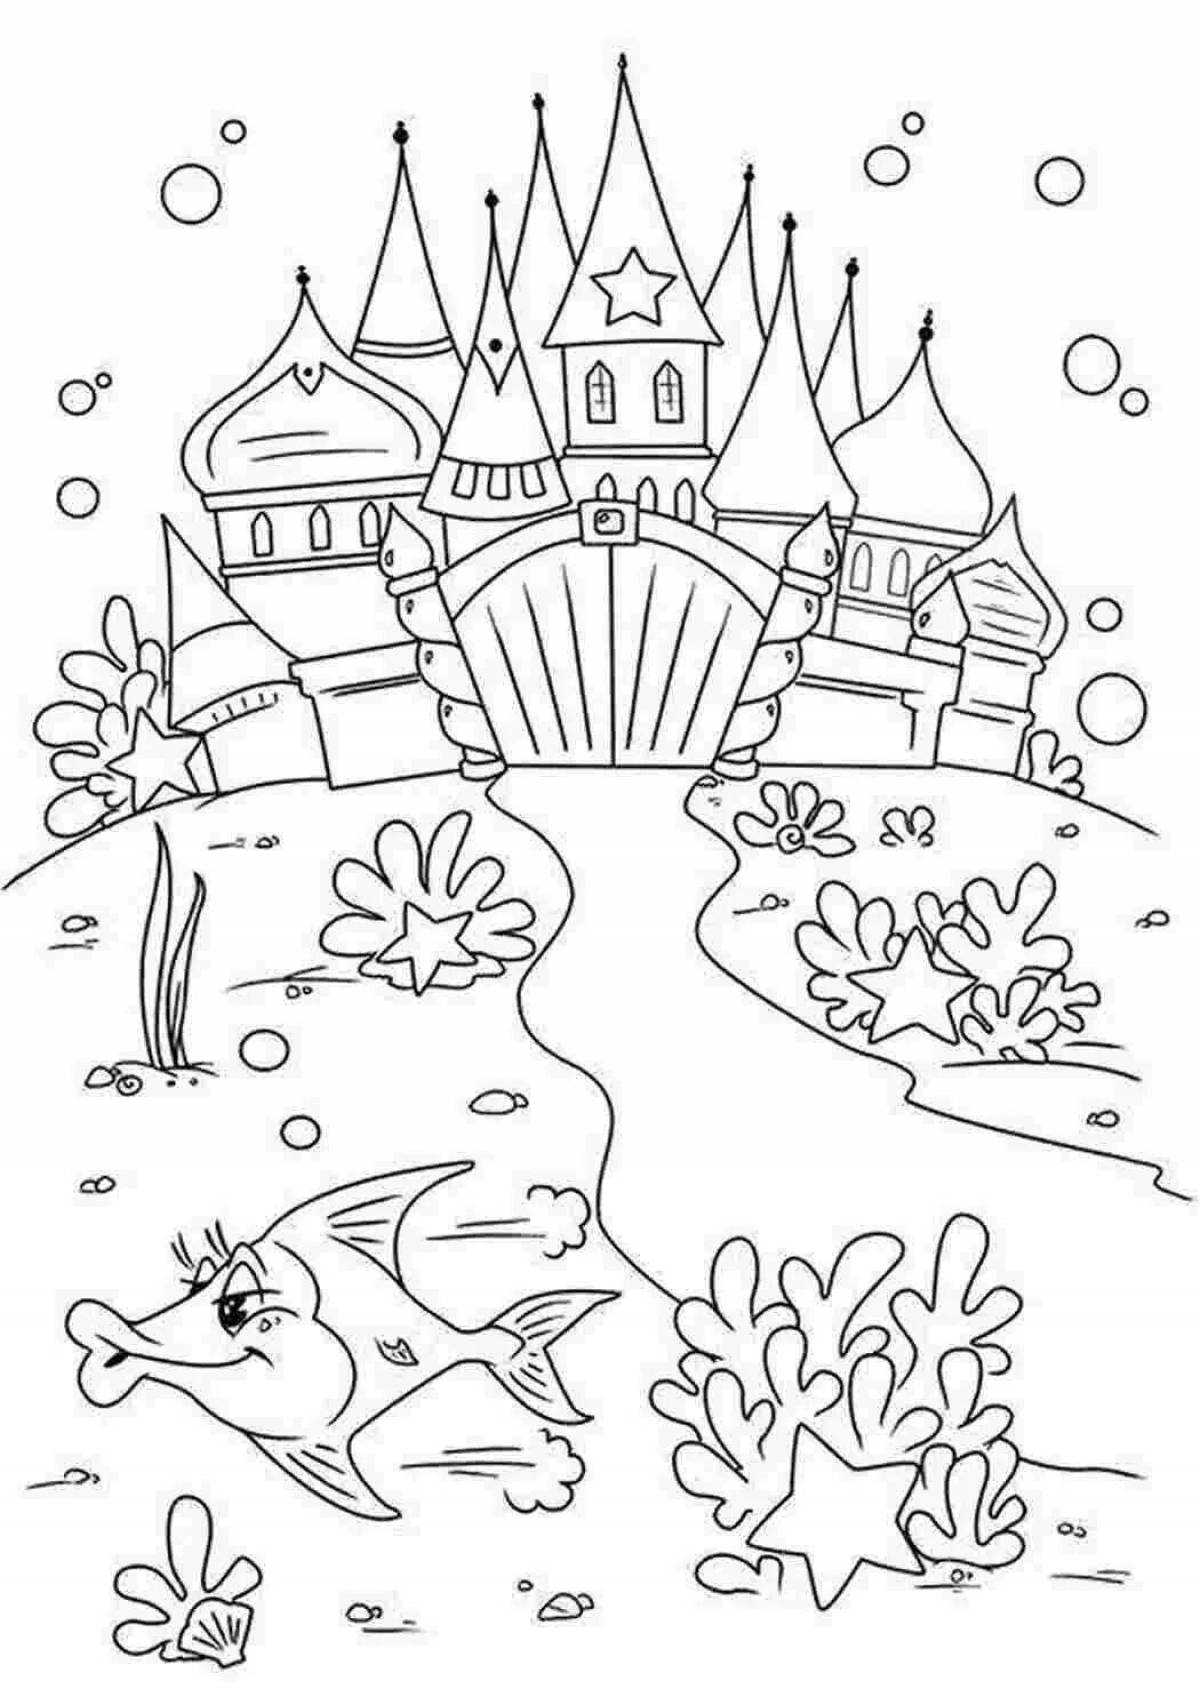 Fantastic kingdom coloring book